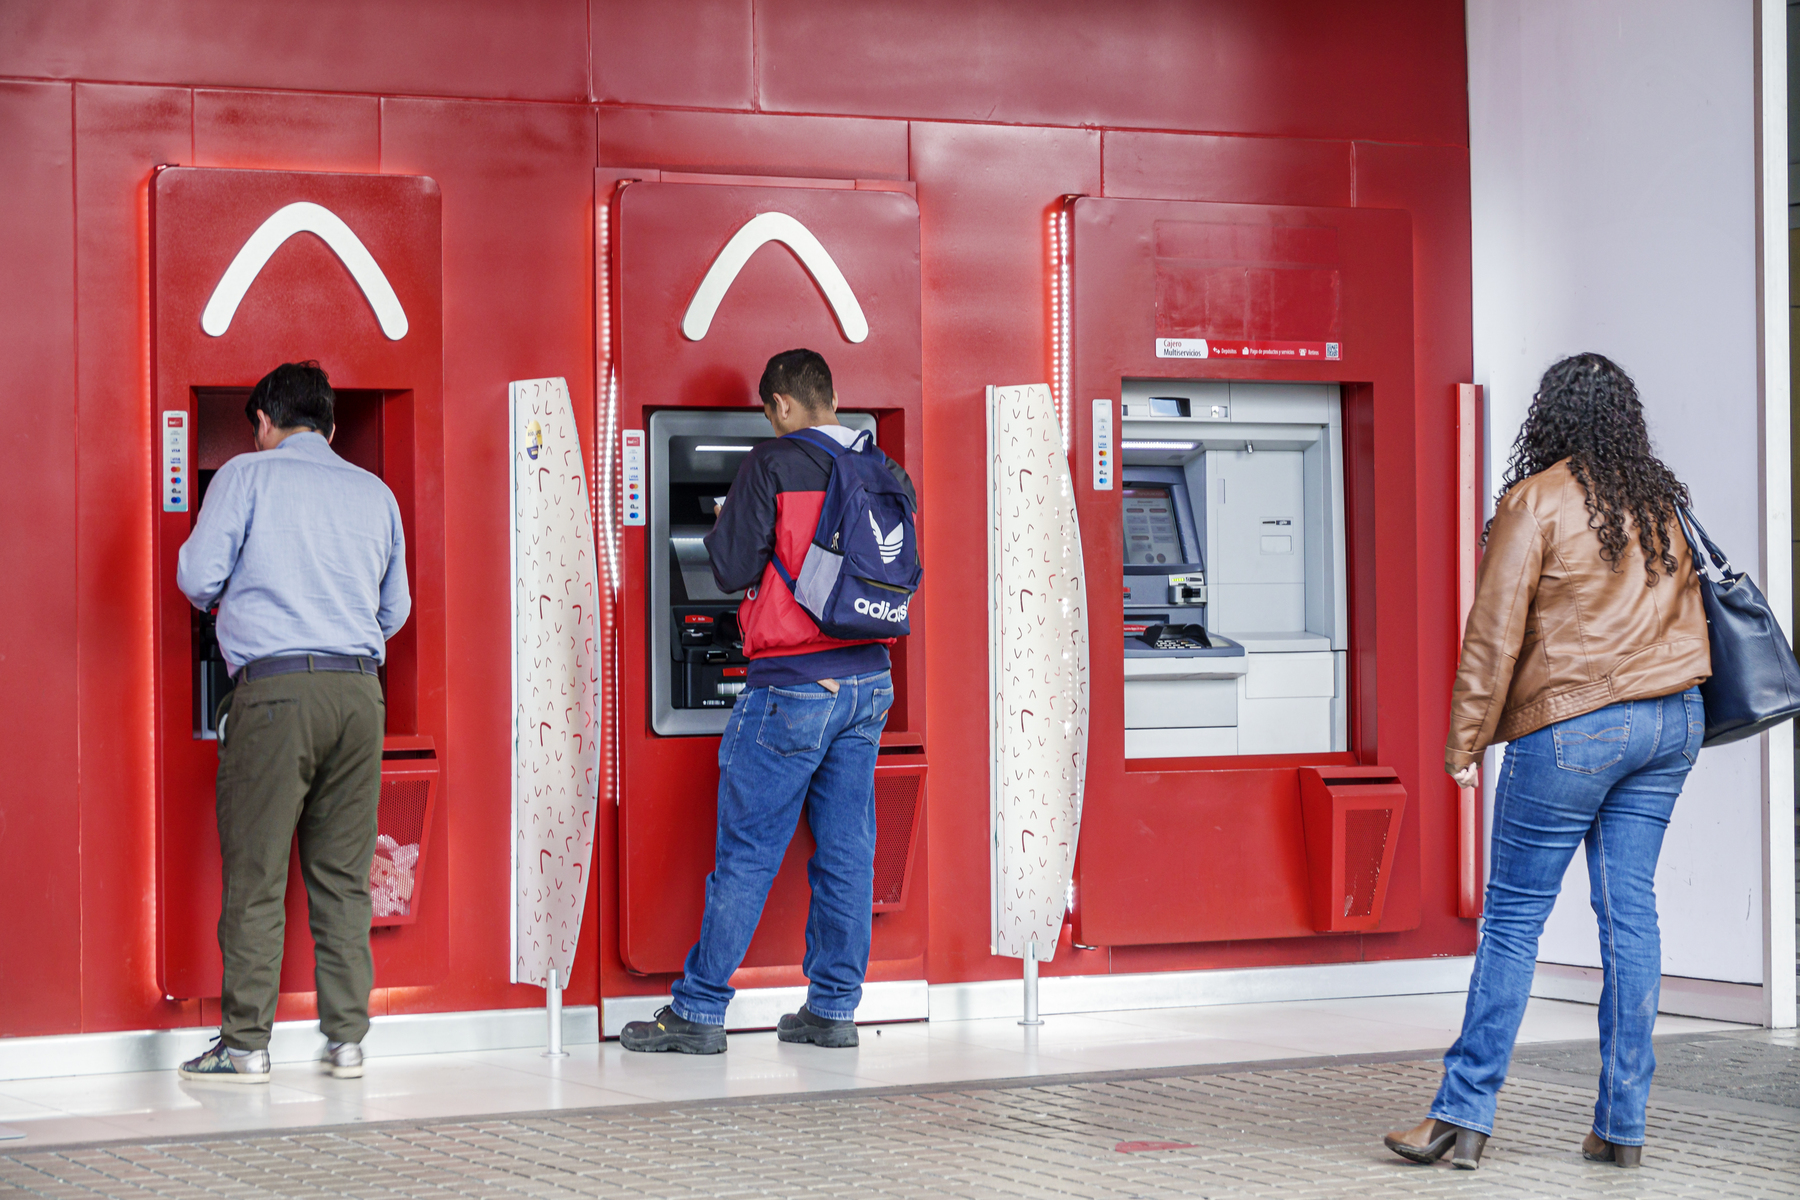 Proceso para enviar dinero efectivo a Daviplata desde un cajero automático.